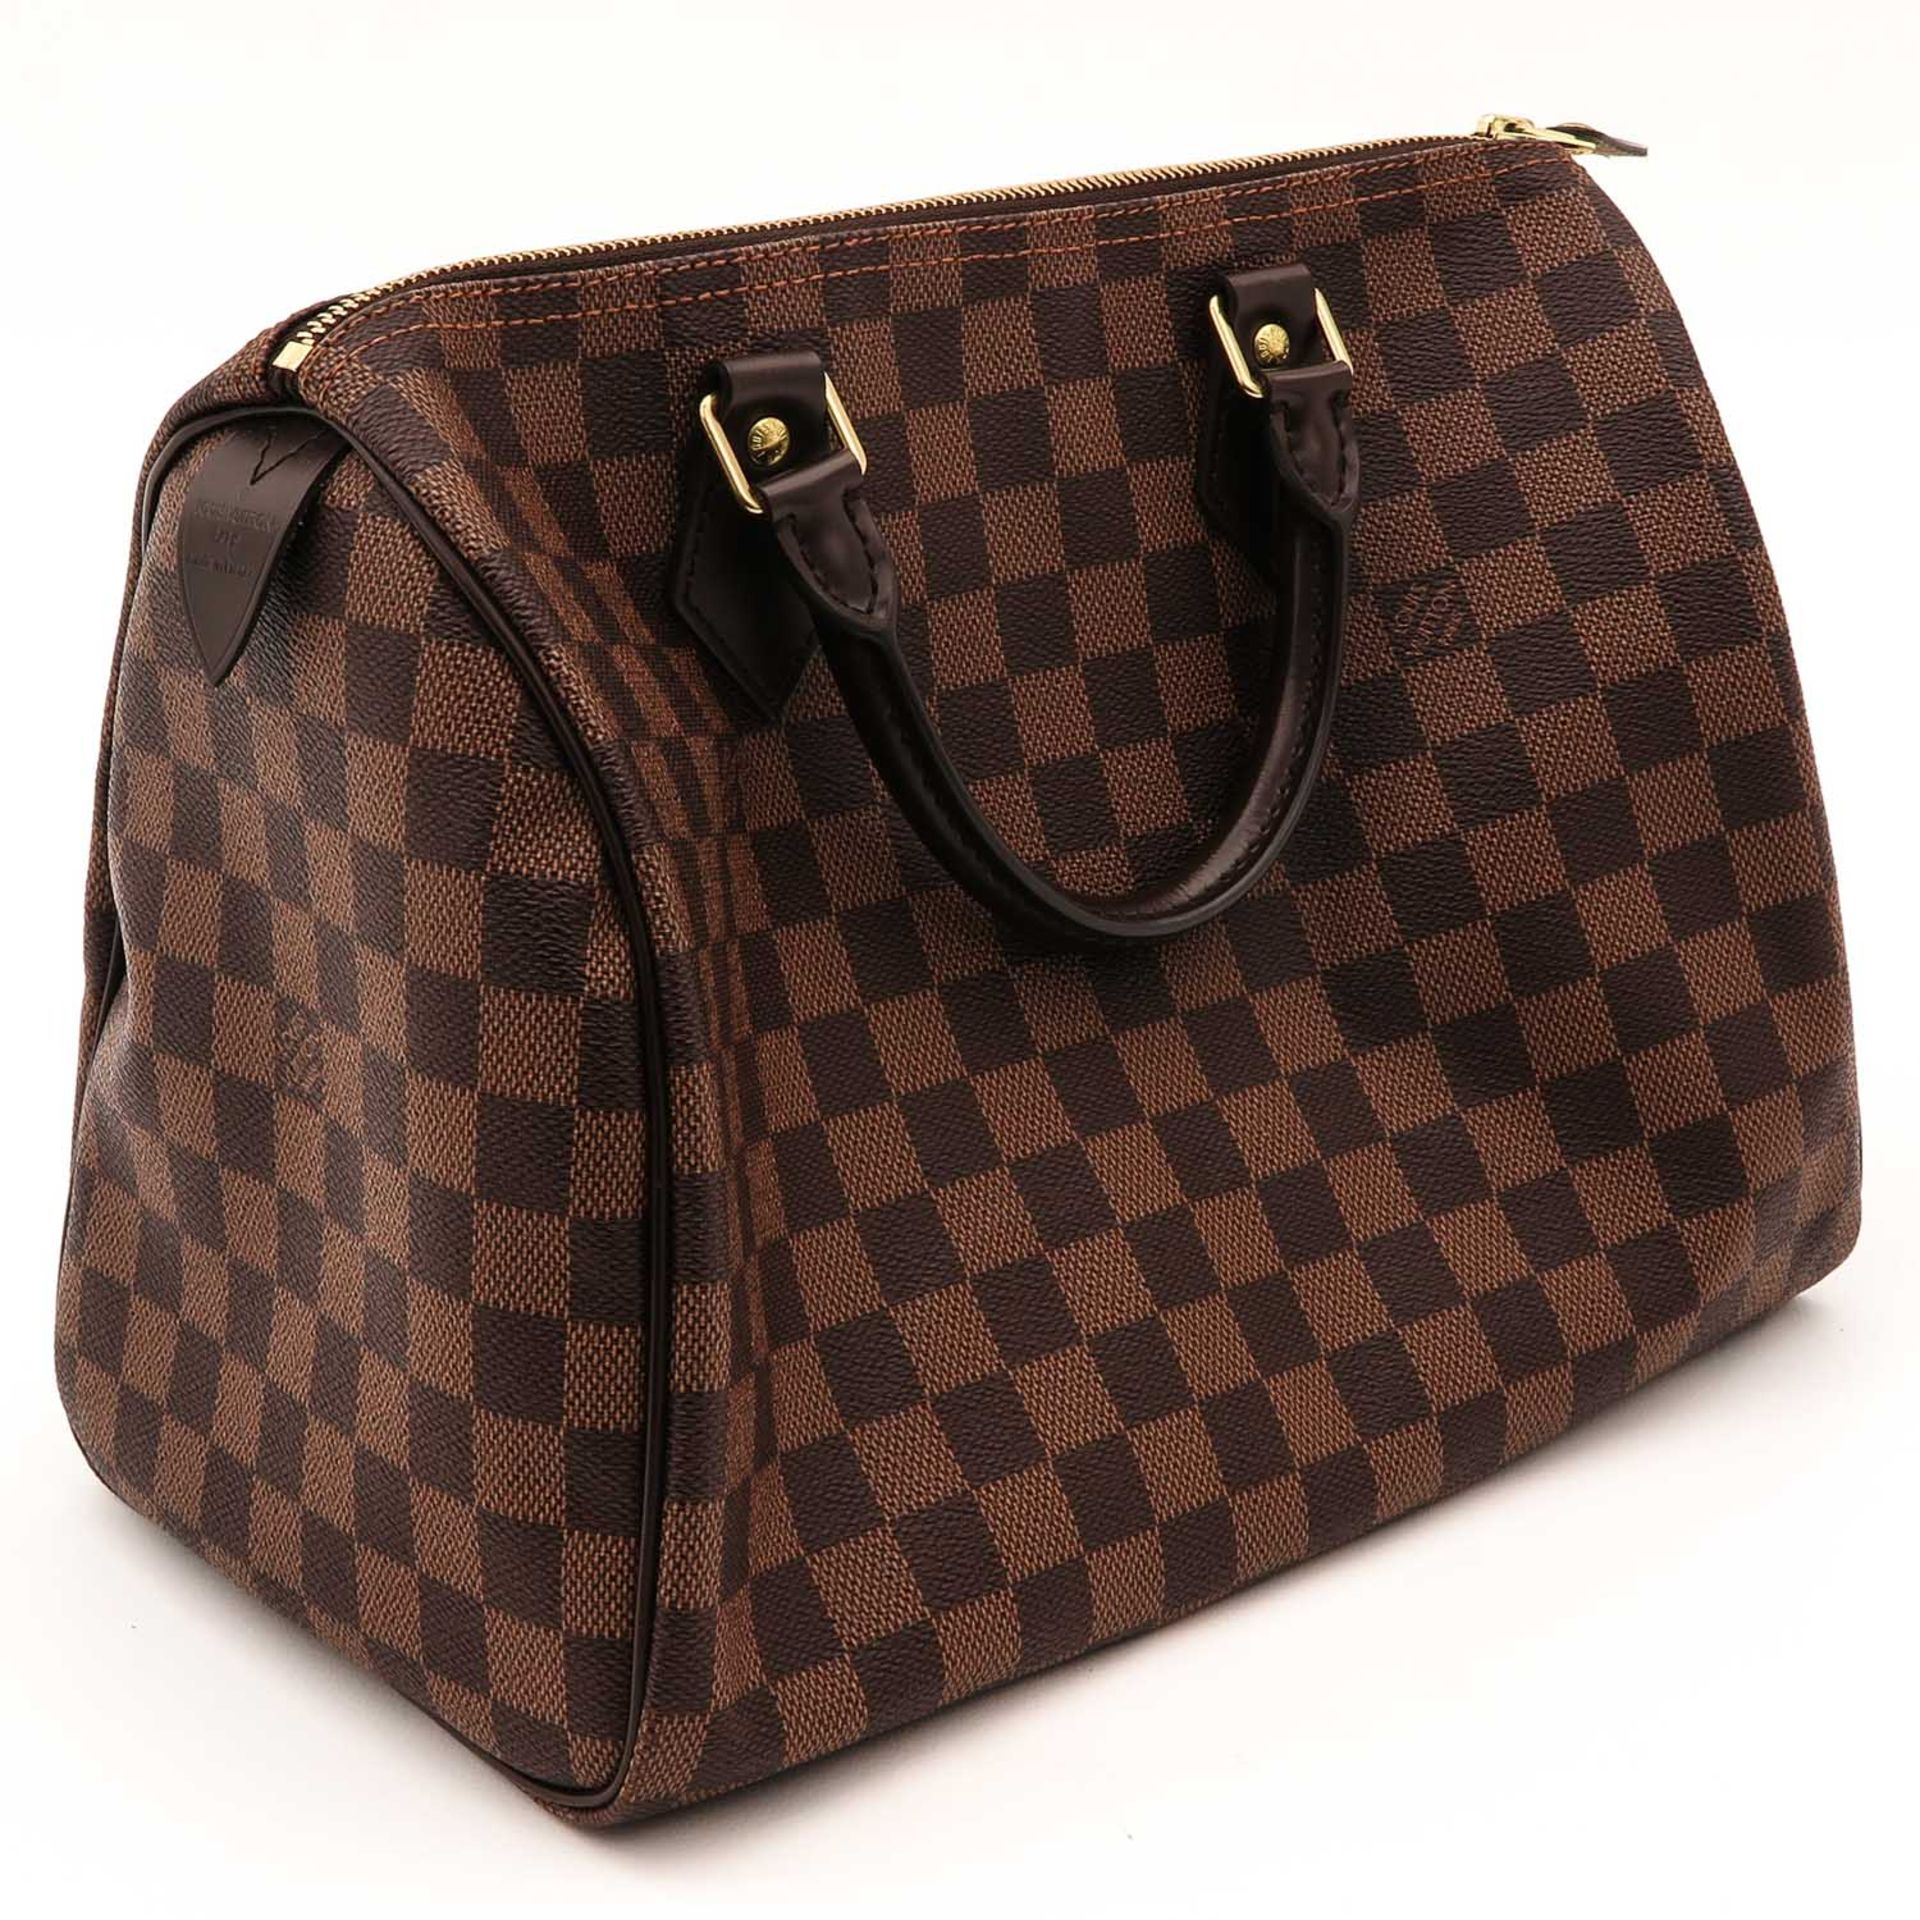 A Louis Vuitton Handbag - Image 3 of 8